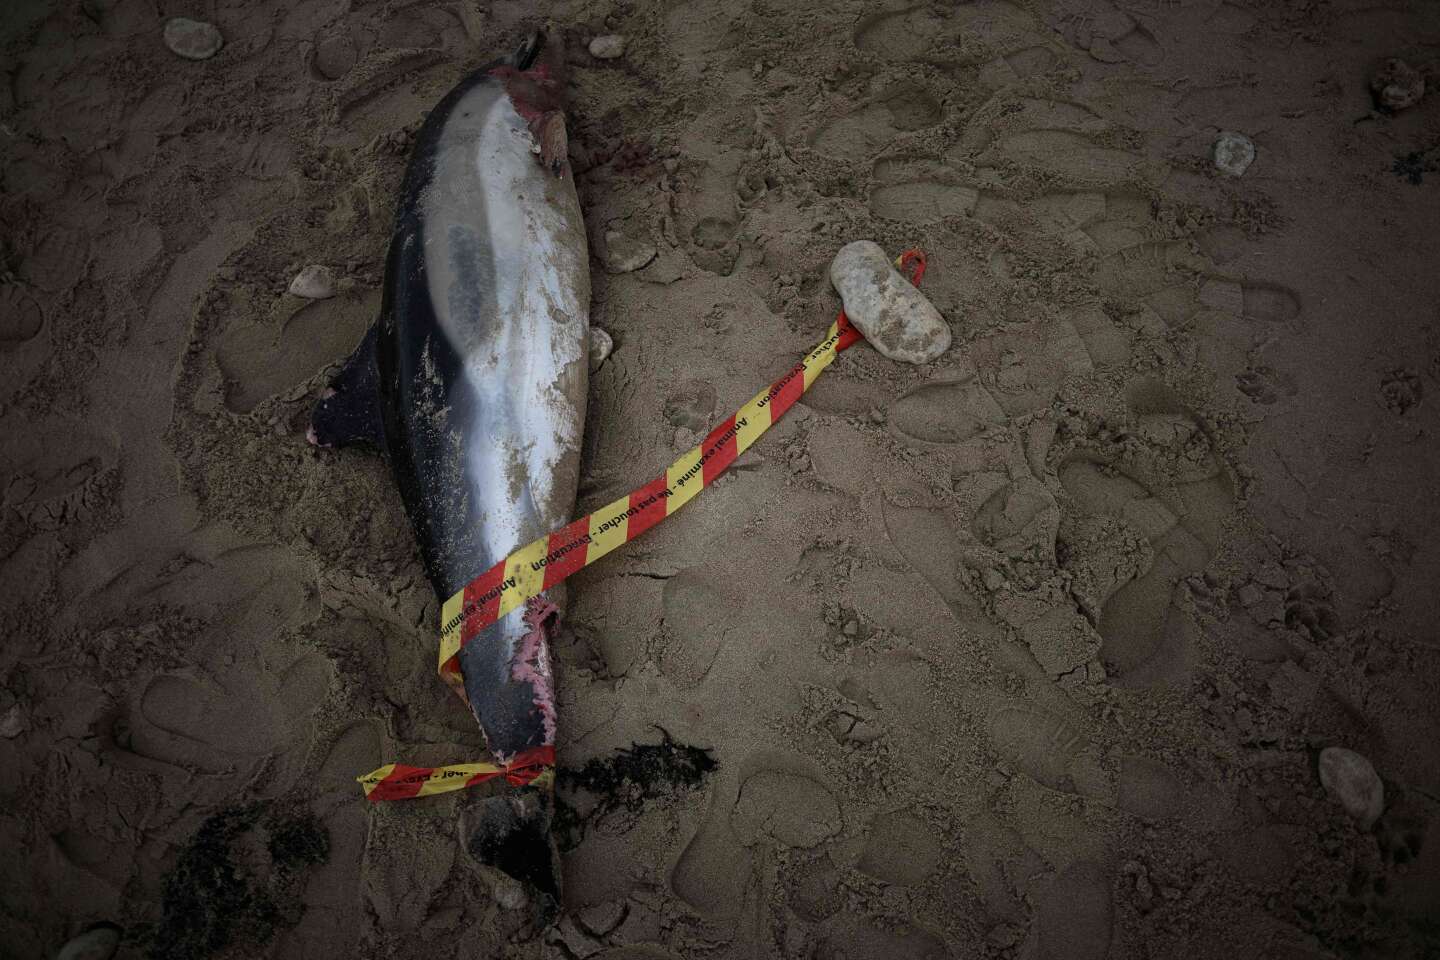 Pour protéger les dauphins, le Conseil d’Etat suspend des dérogations à la fermeture de la pêche